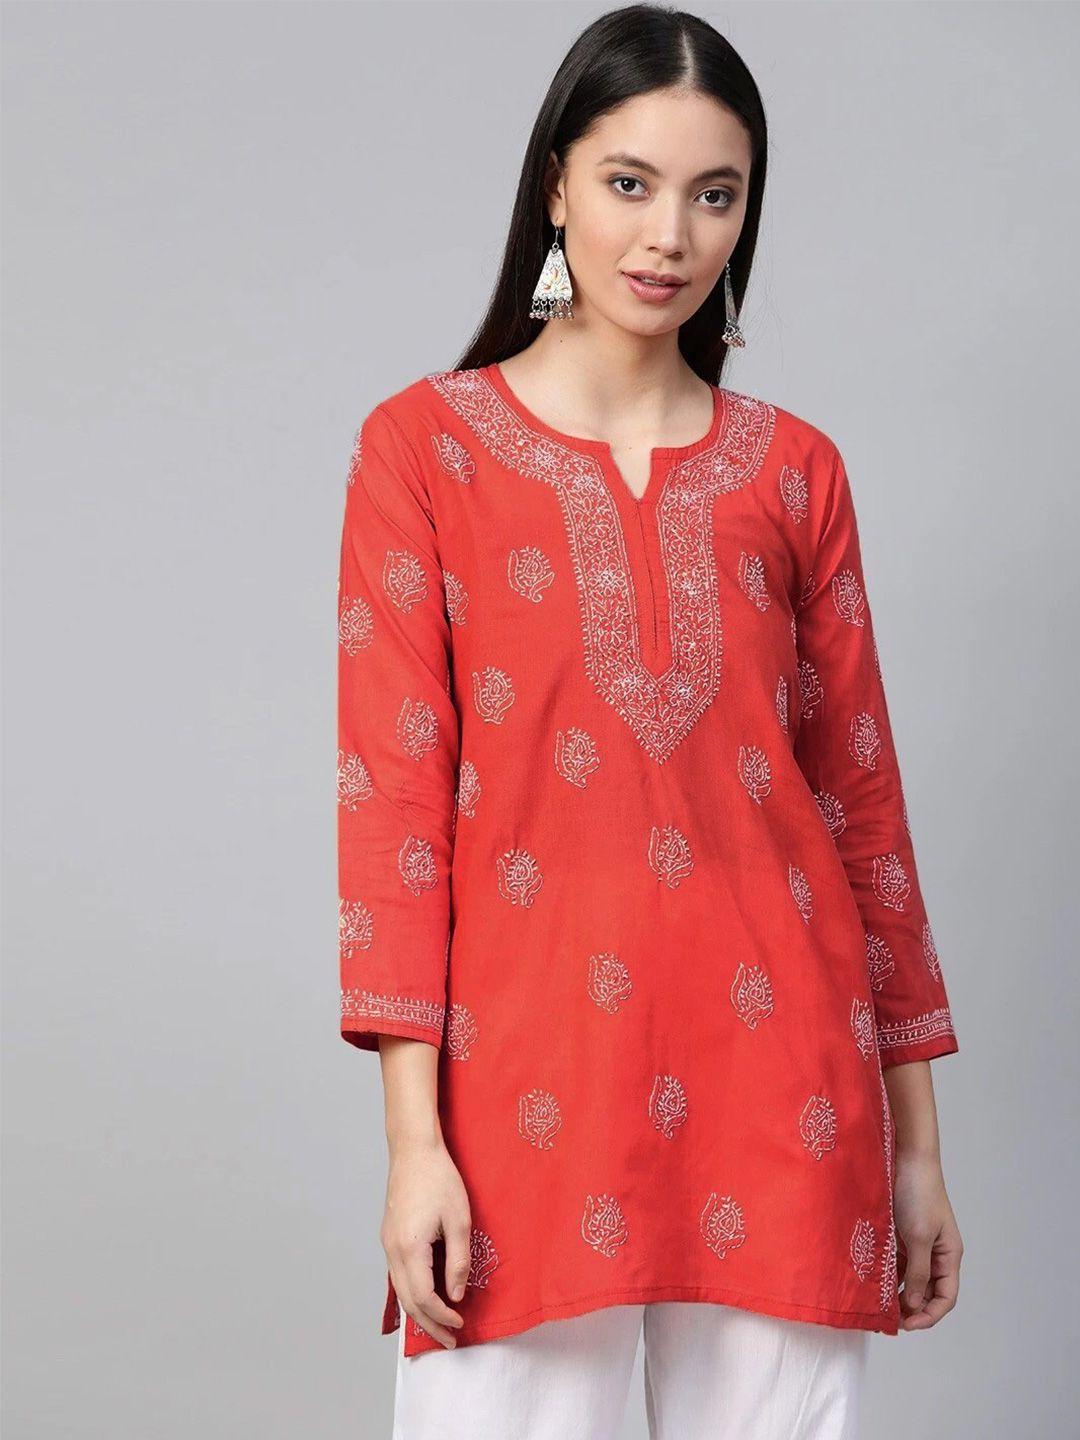 ada-coral-&-white-ethnic-motifs-embroidered-thread-work-pure-cotton-thread-work-kurti